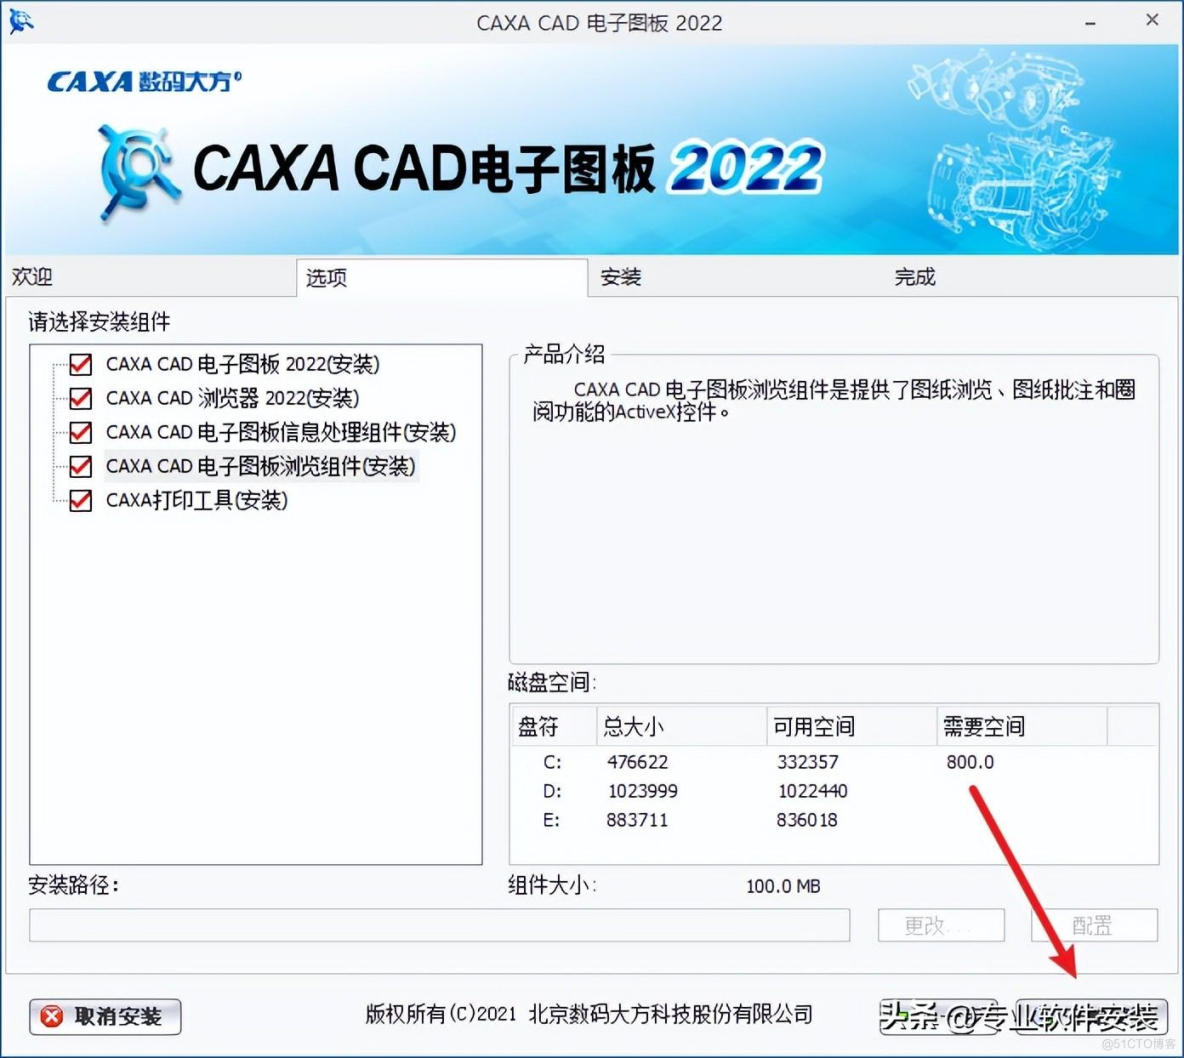 CAXA CAD电子图版 2022软件安装包和安装教程_CAXA CAD 2022_04